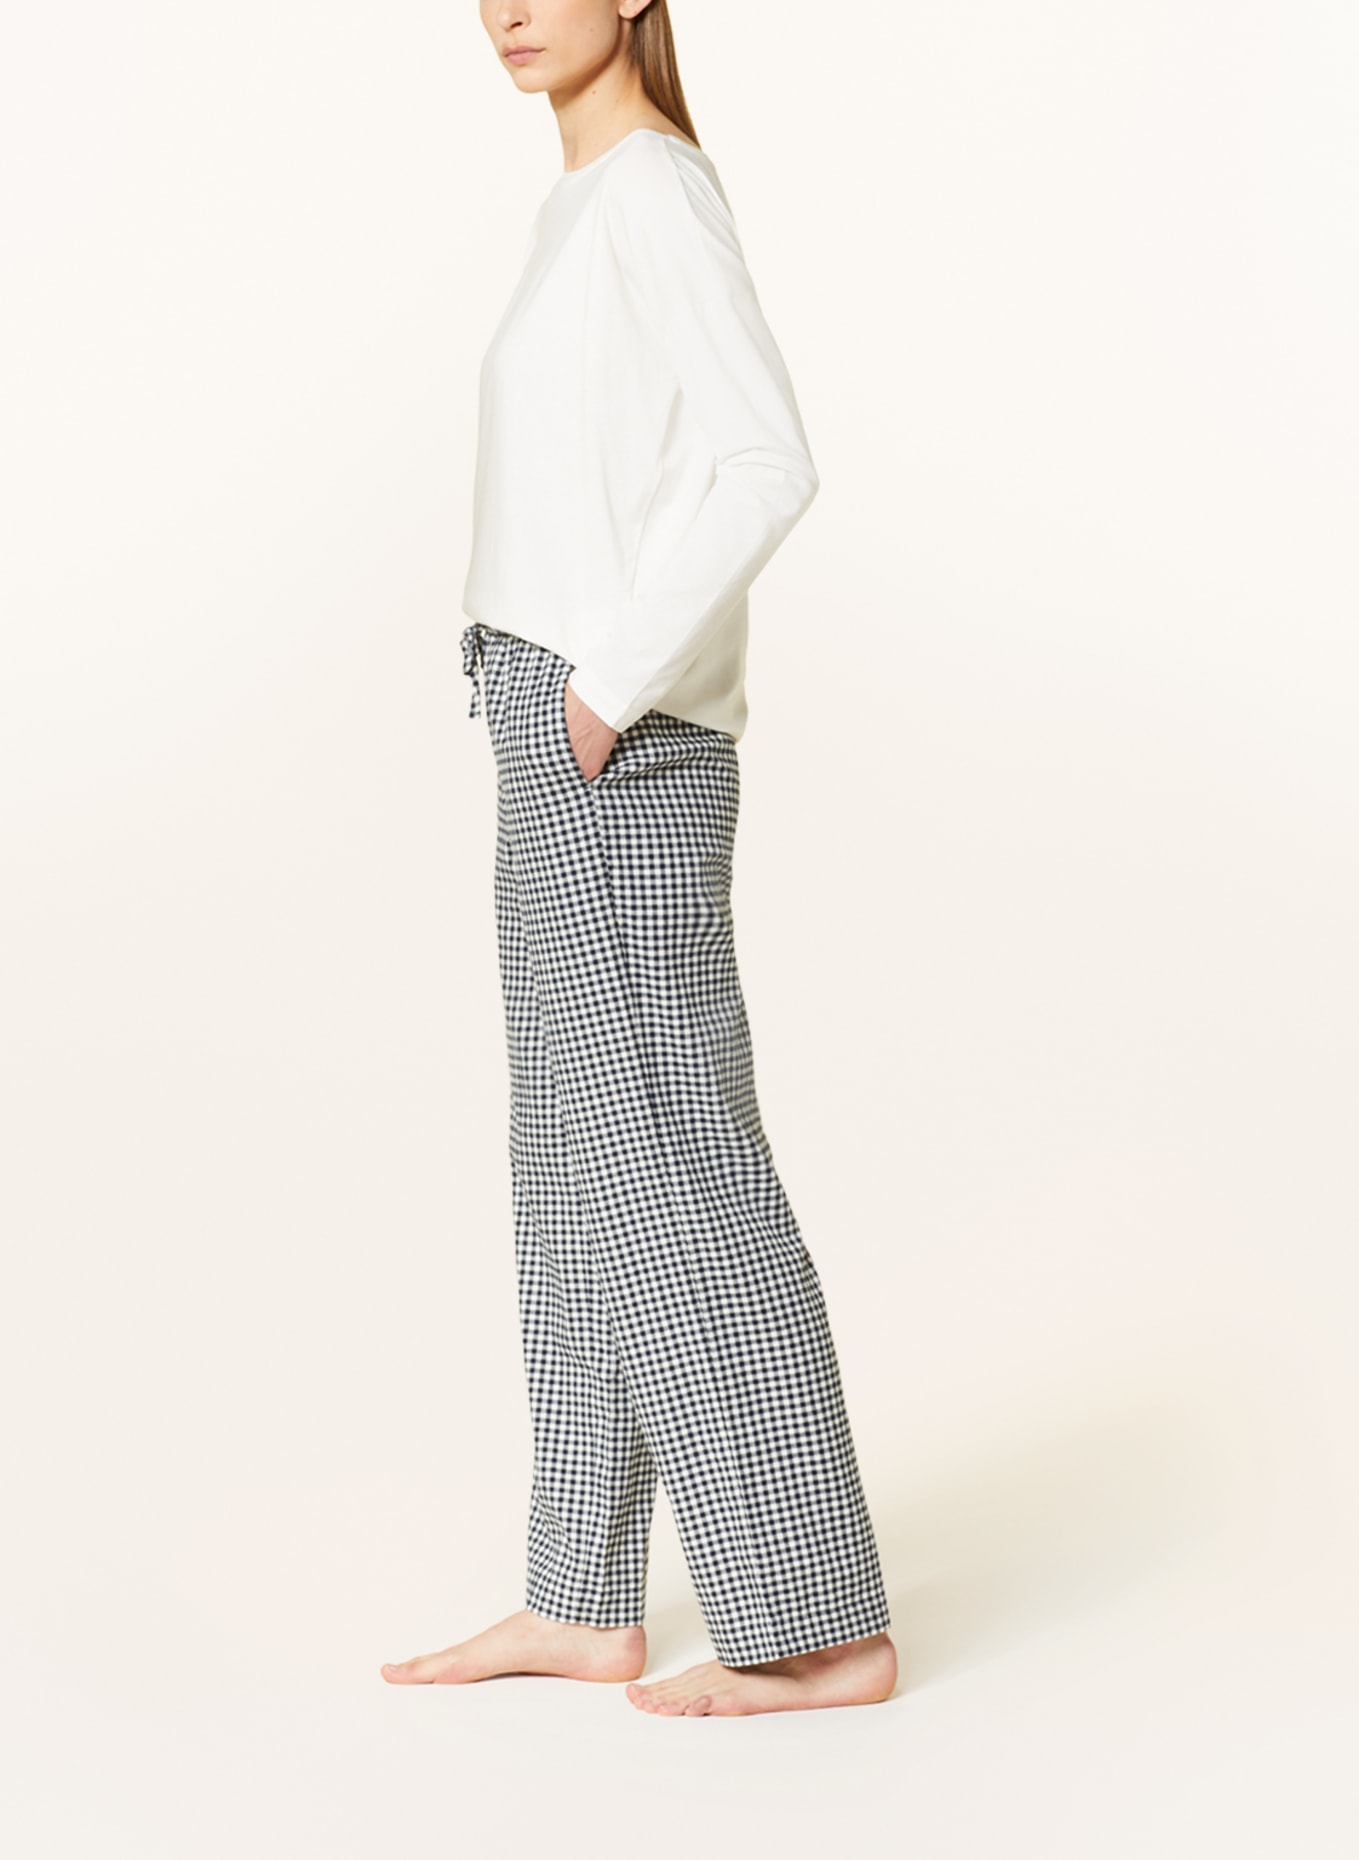 mey Pajama shirt series TESSIE, Color: WHITE (Image 4)